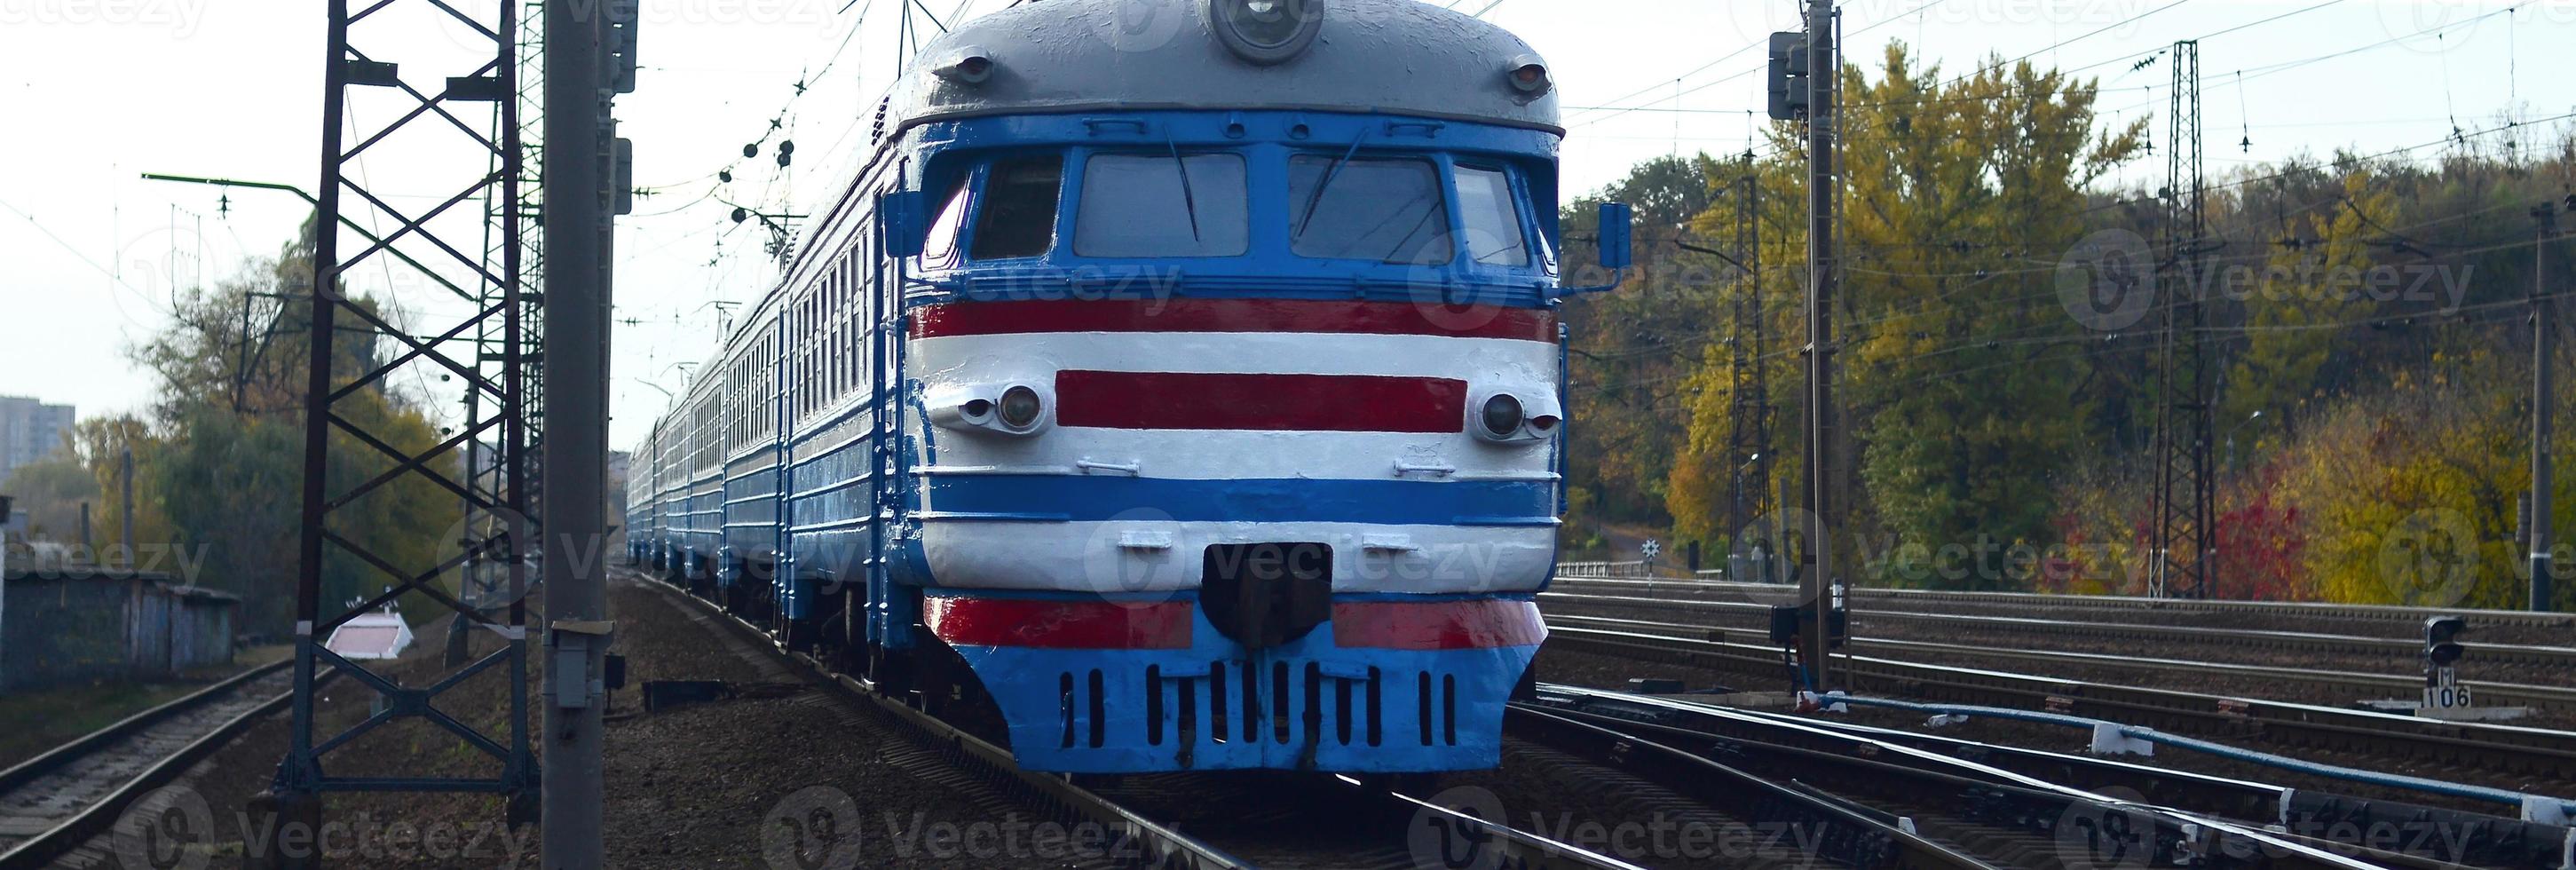 vecchio sovietico elettrico treno con antiquato design in movimento di rotaia foto